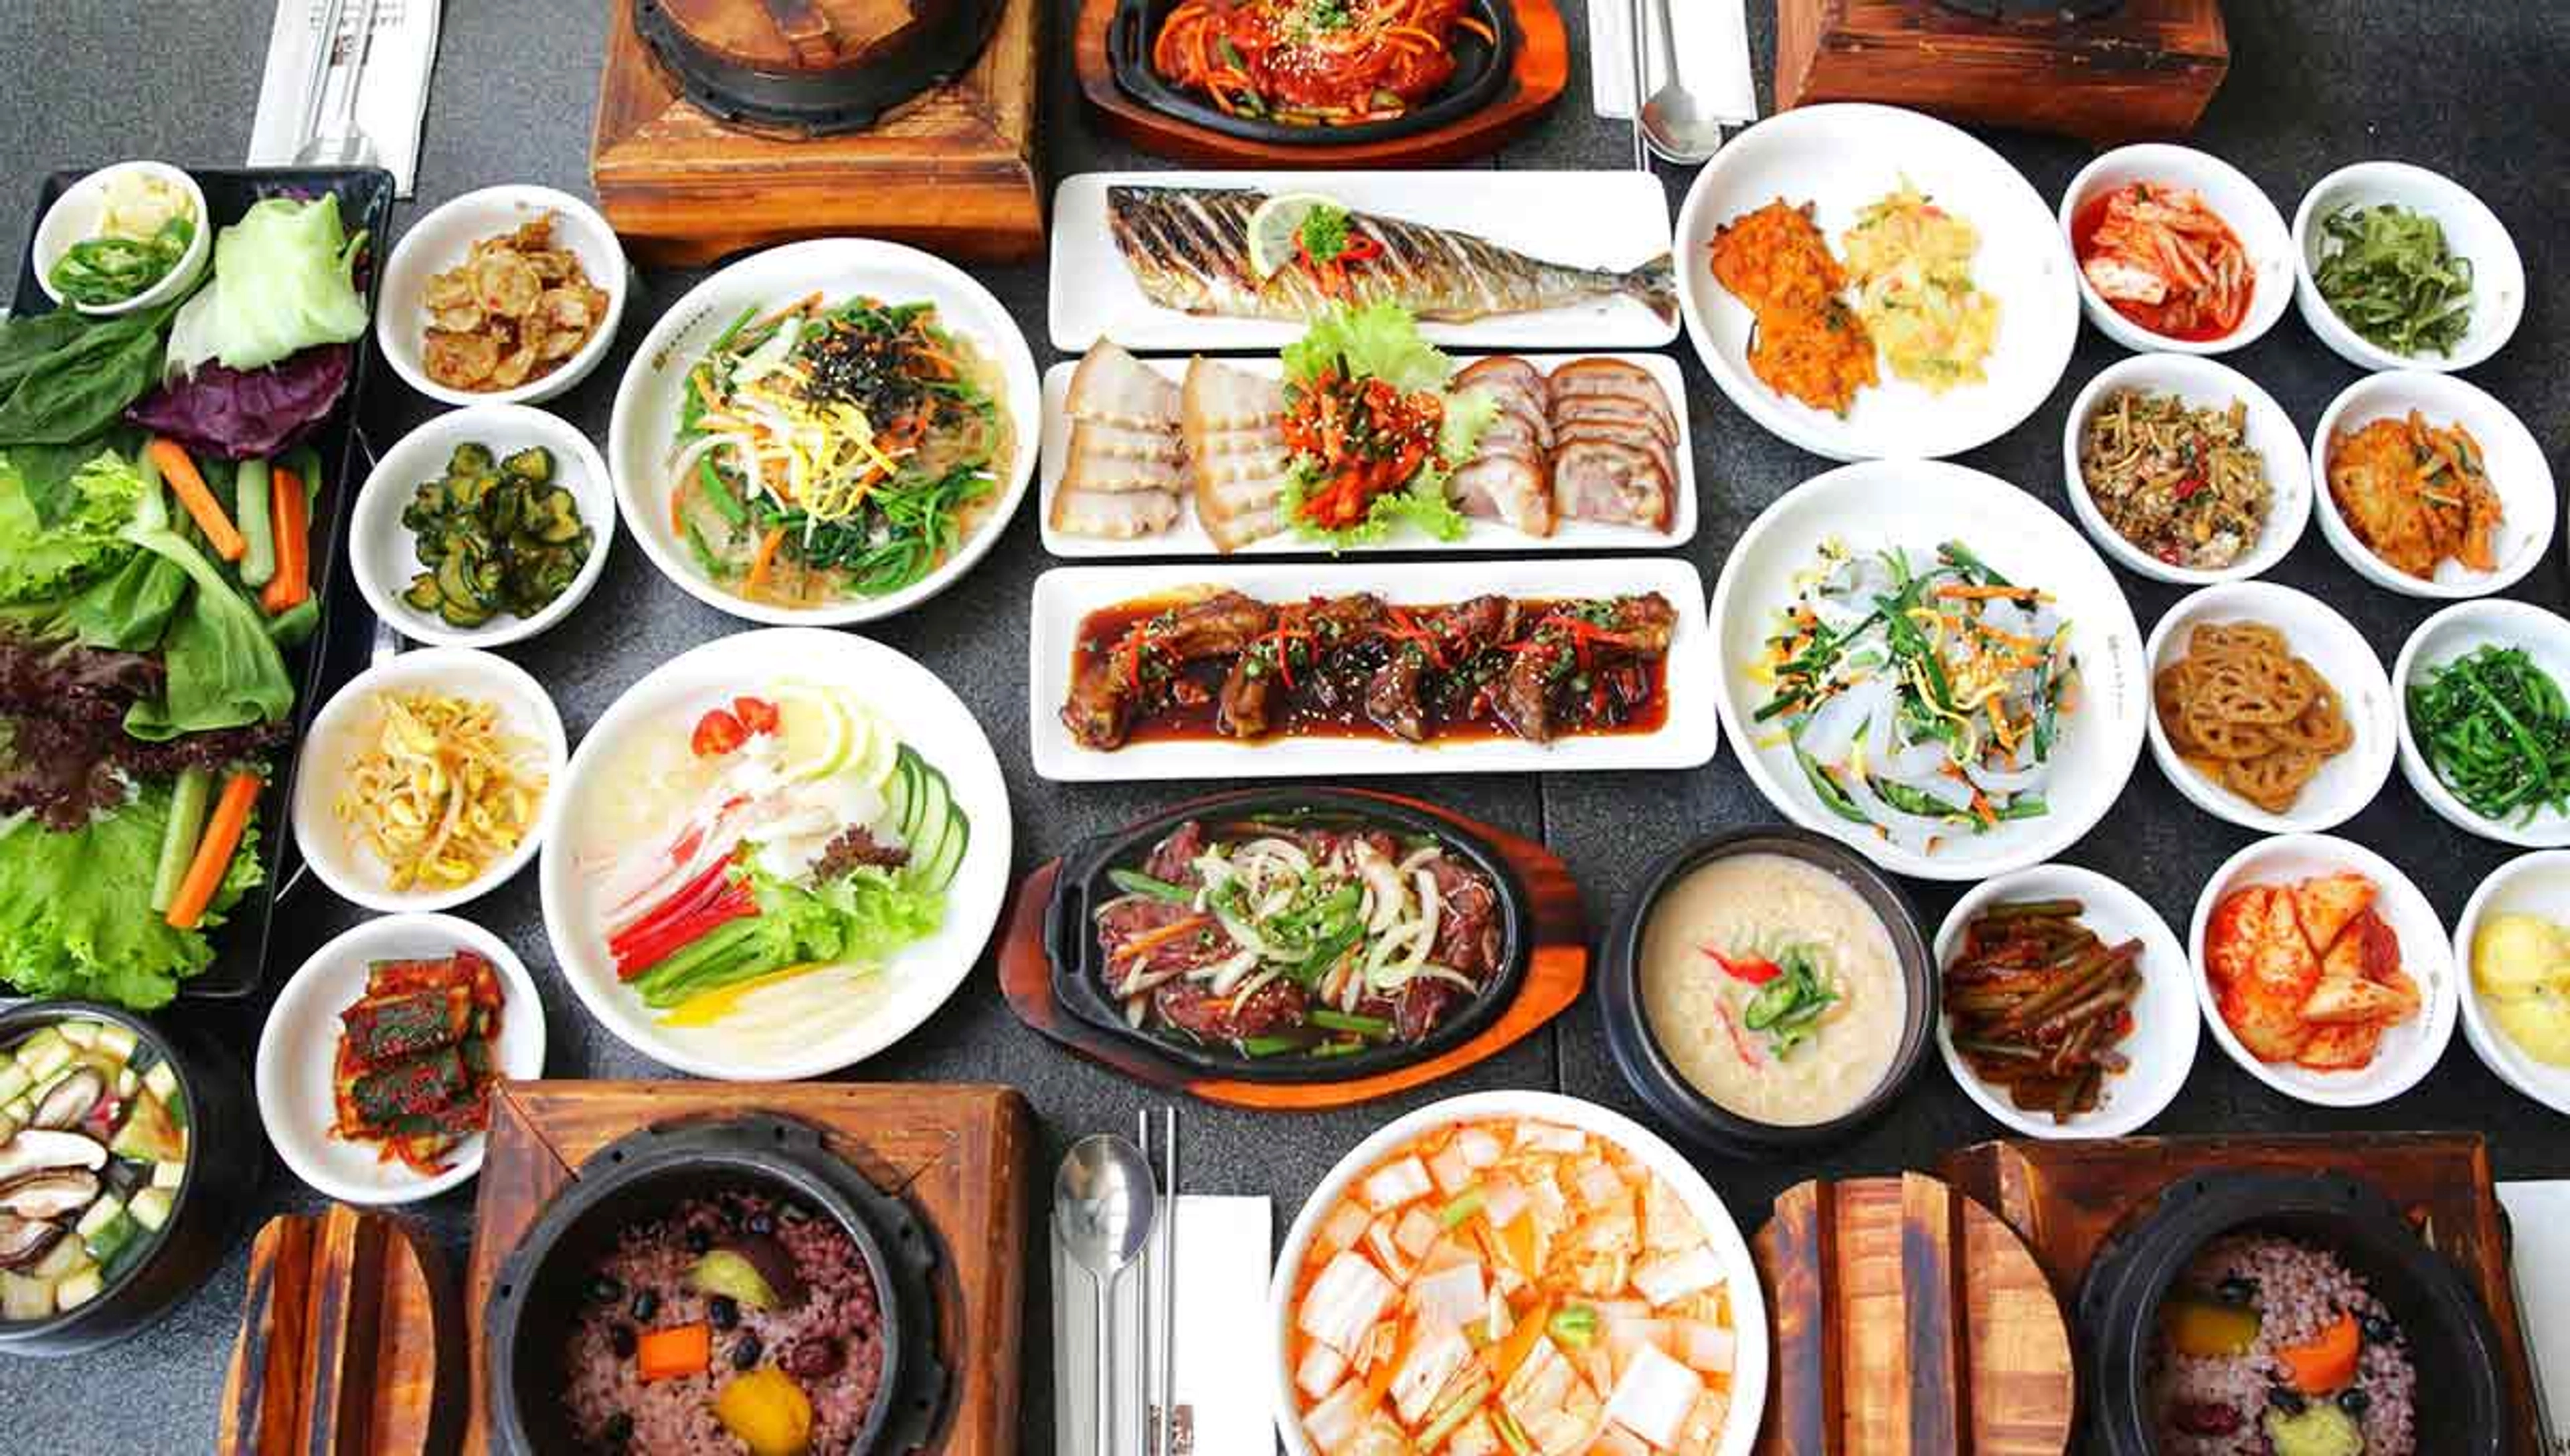 “Bỏ túi” top 10 món ăn ngon rẻ ở Sài Gòn nhất định phải thử